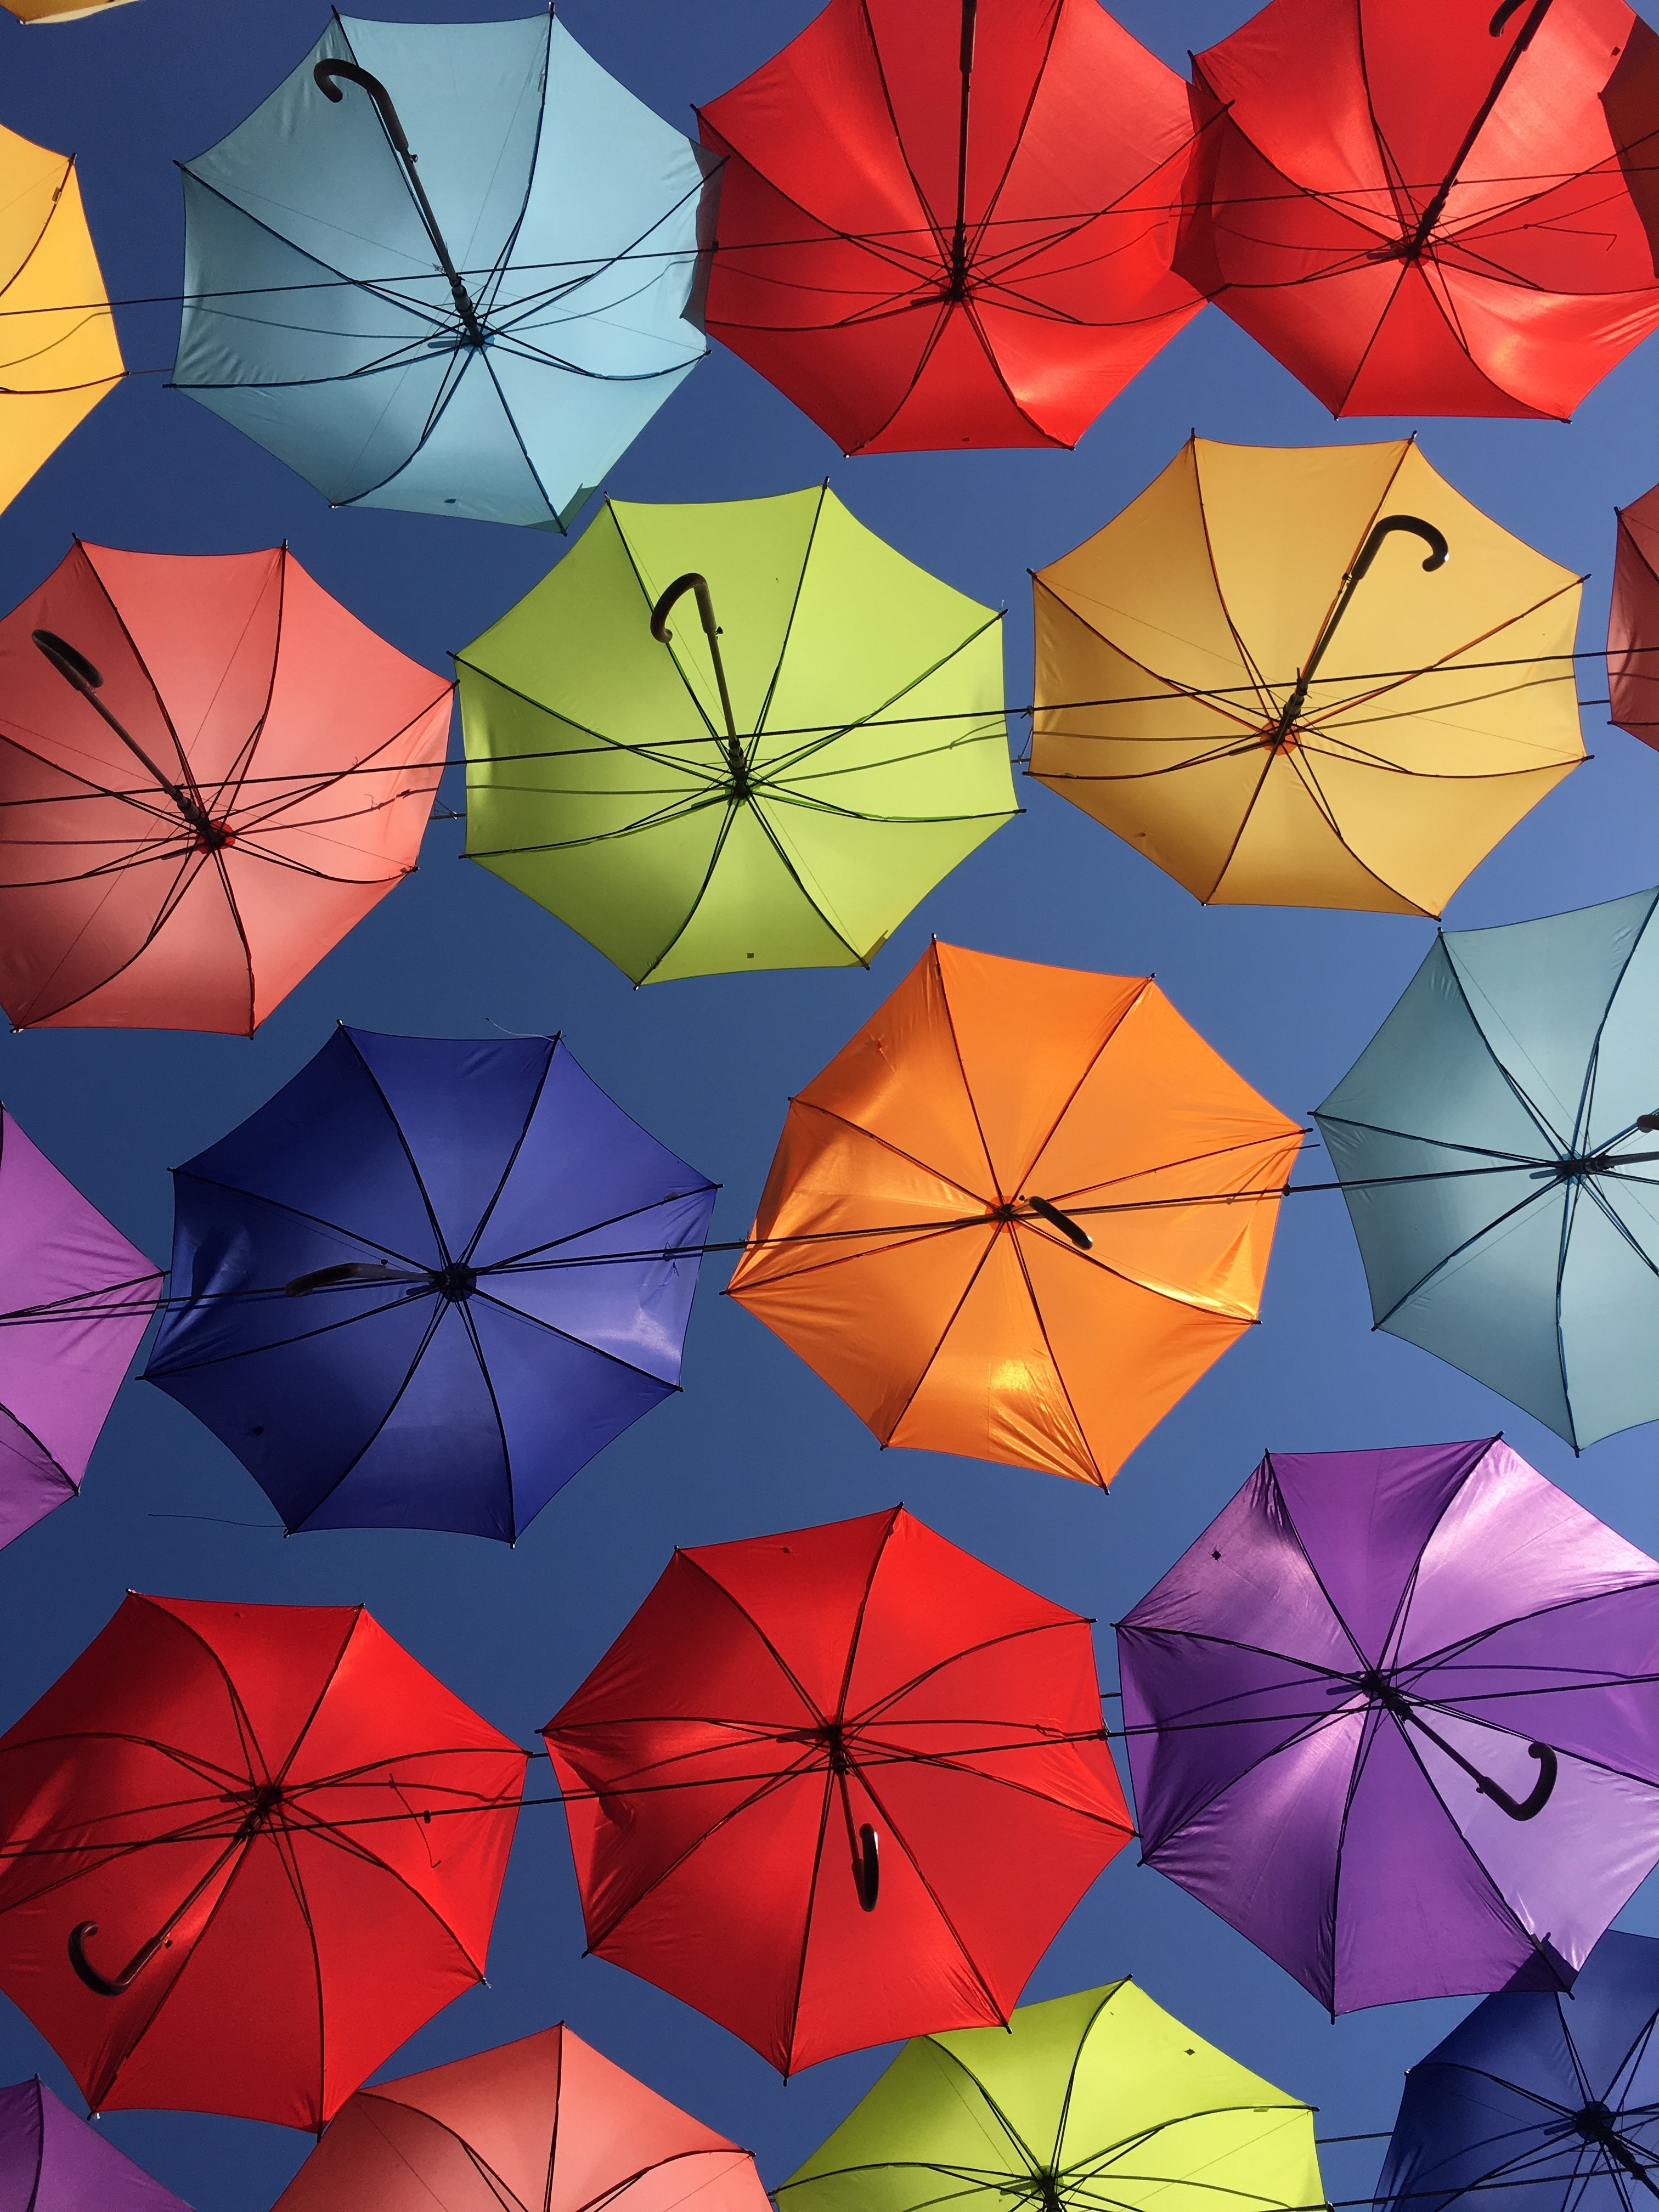 miscellanea, miscellaneous, multicolored, motley, decoration, umbrella, bottom view, umbrellas QHD